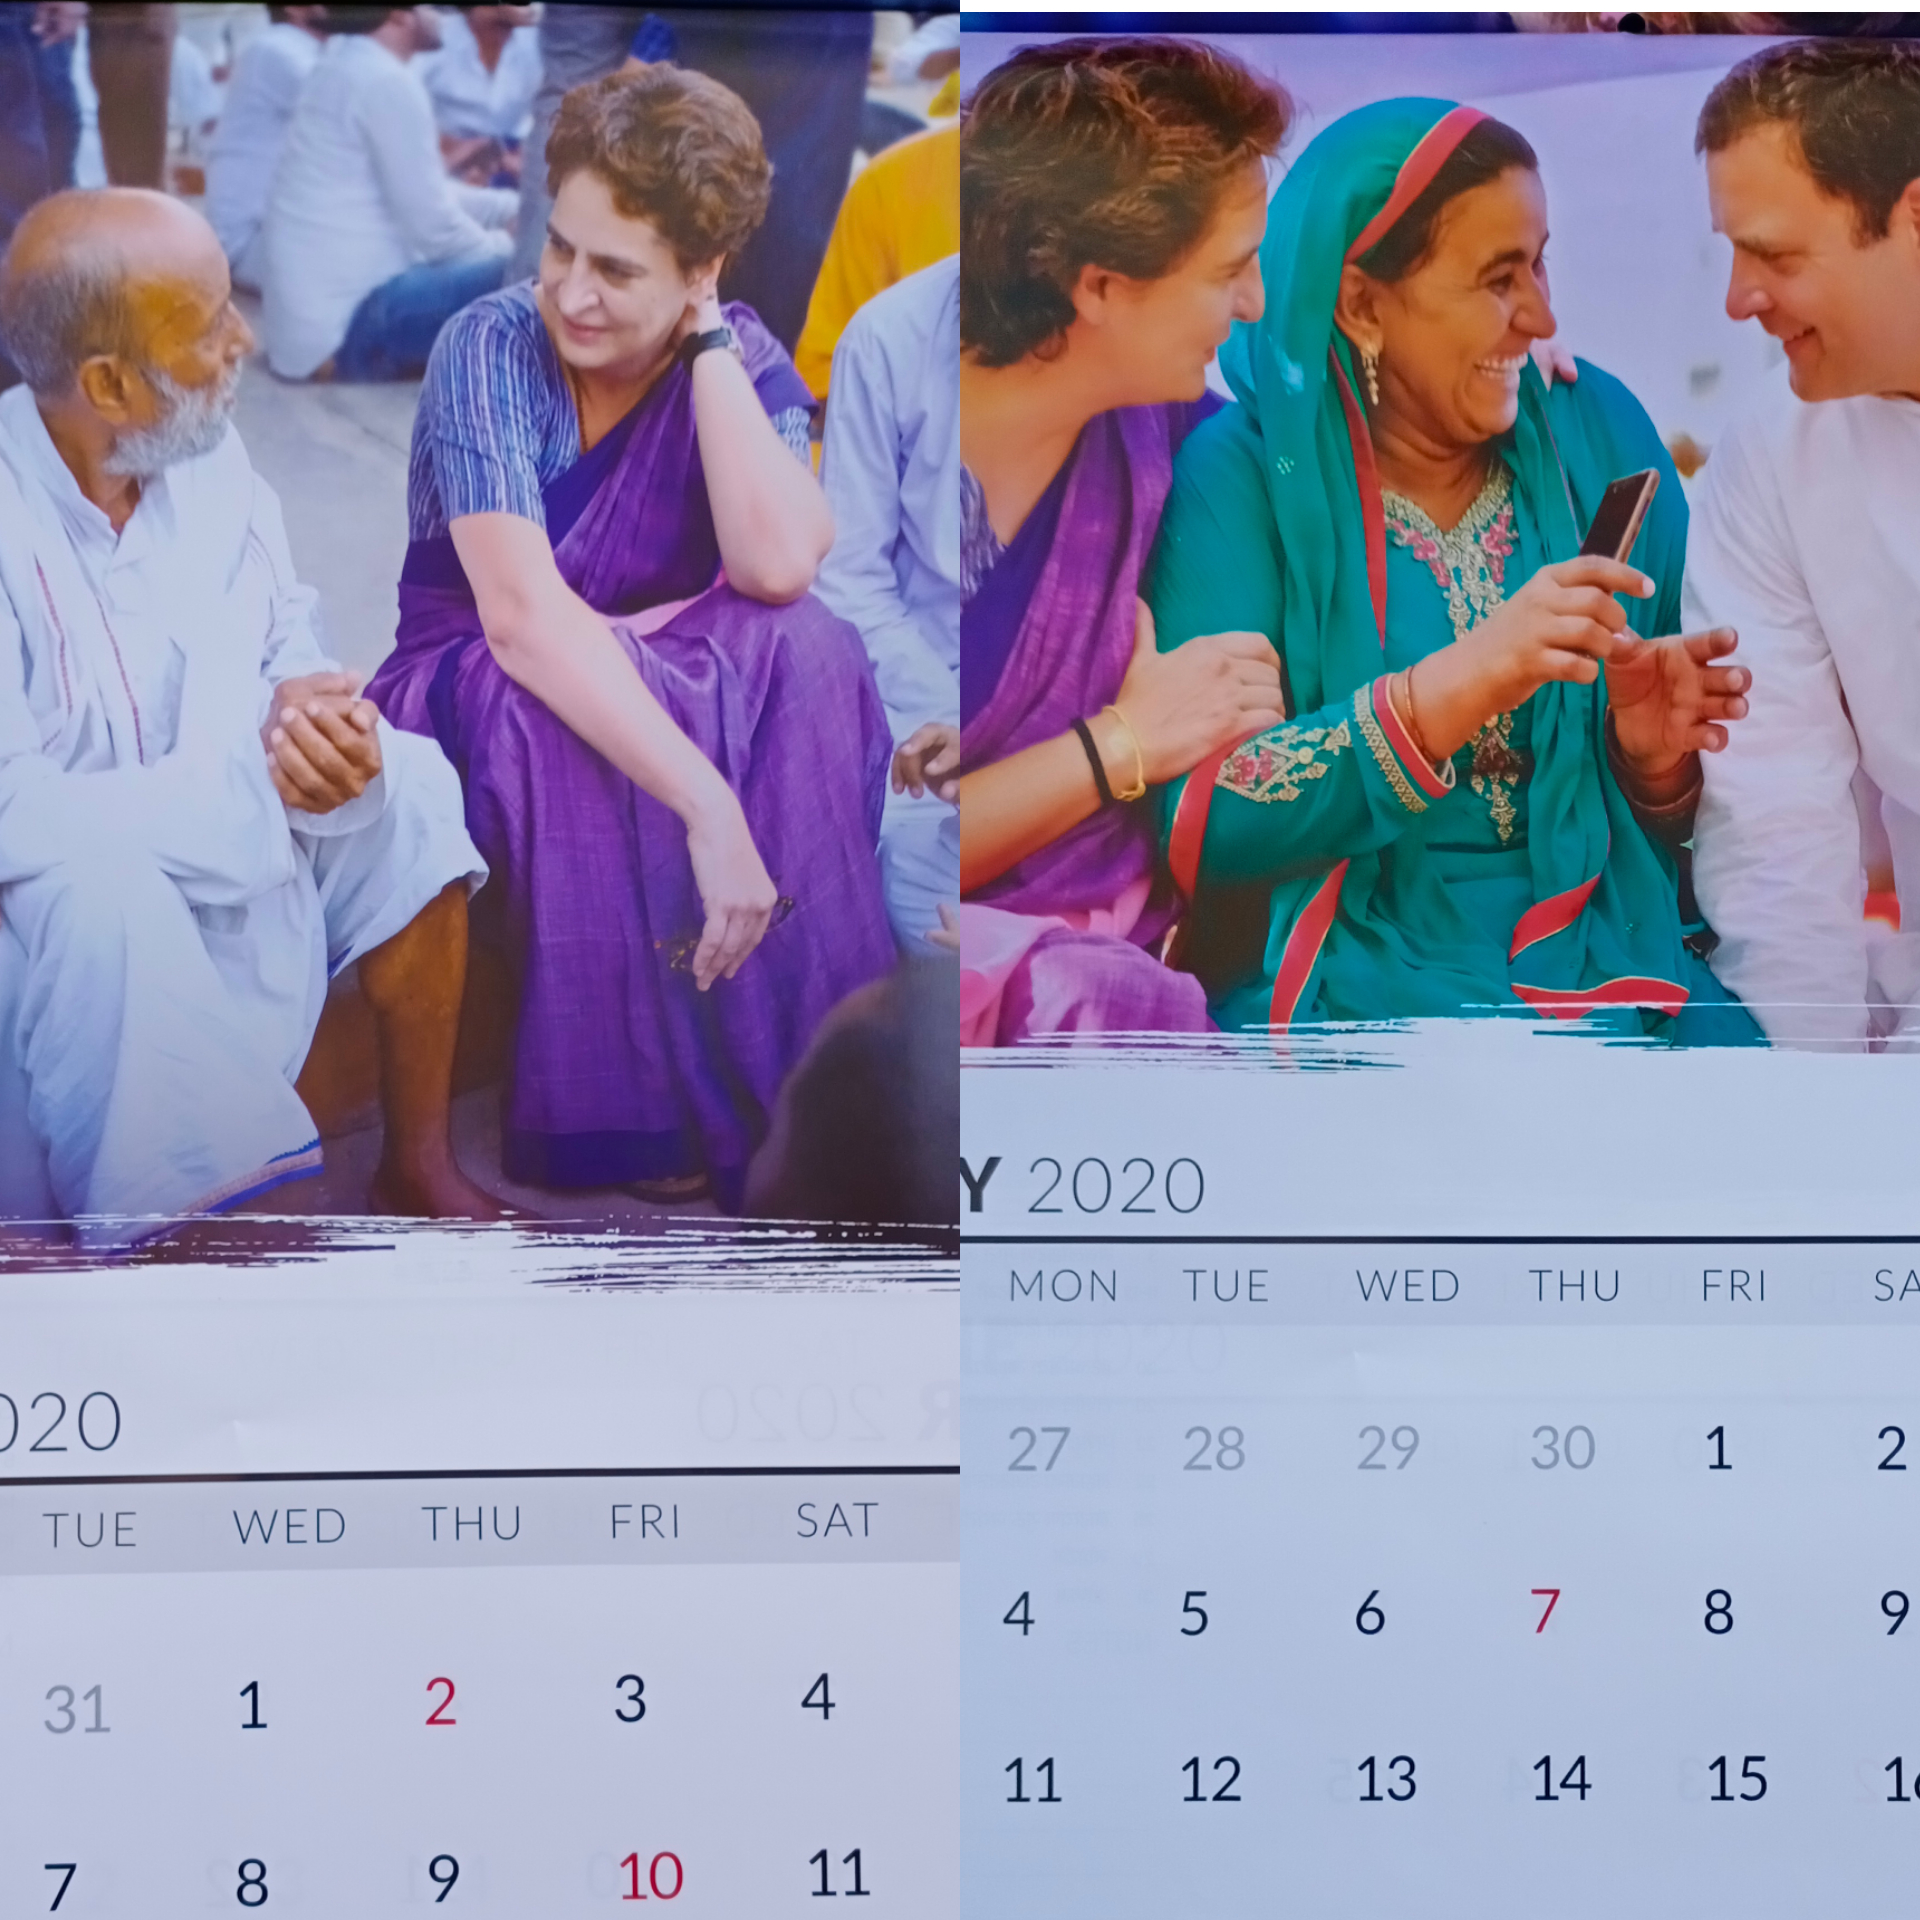 कांग्रेस ने पहले पार्टी के कार्यकर्ताओं को बाटी किताबे अब प्रियंका गांधी वाड्रा का नववर्ष का कैलेंडर दिया गया इन सभी लोगों को